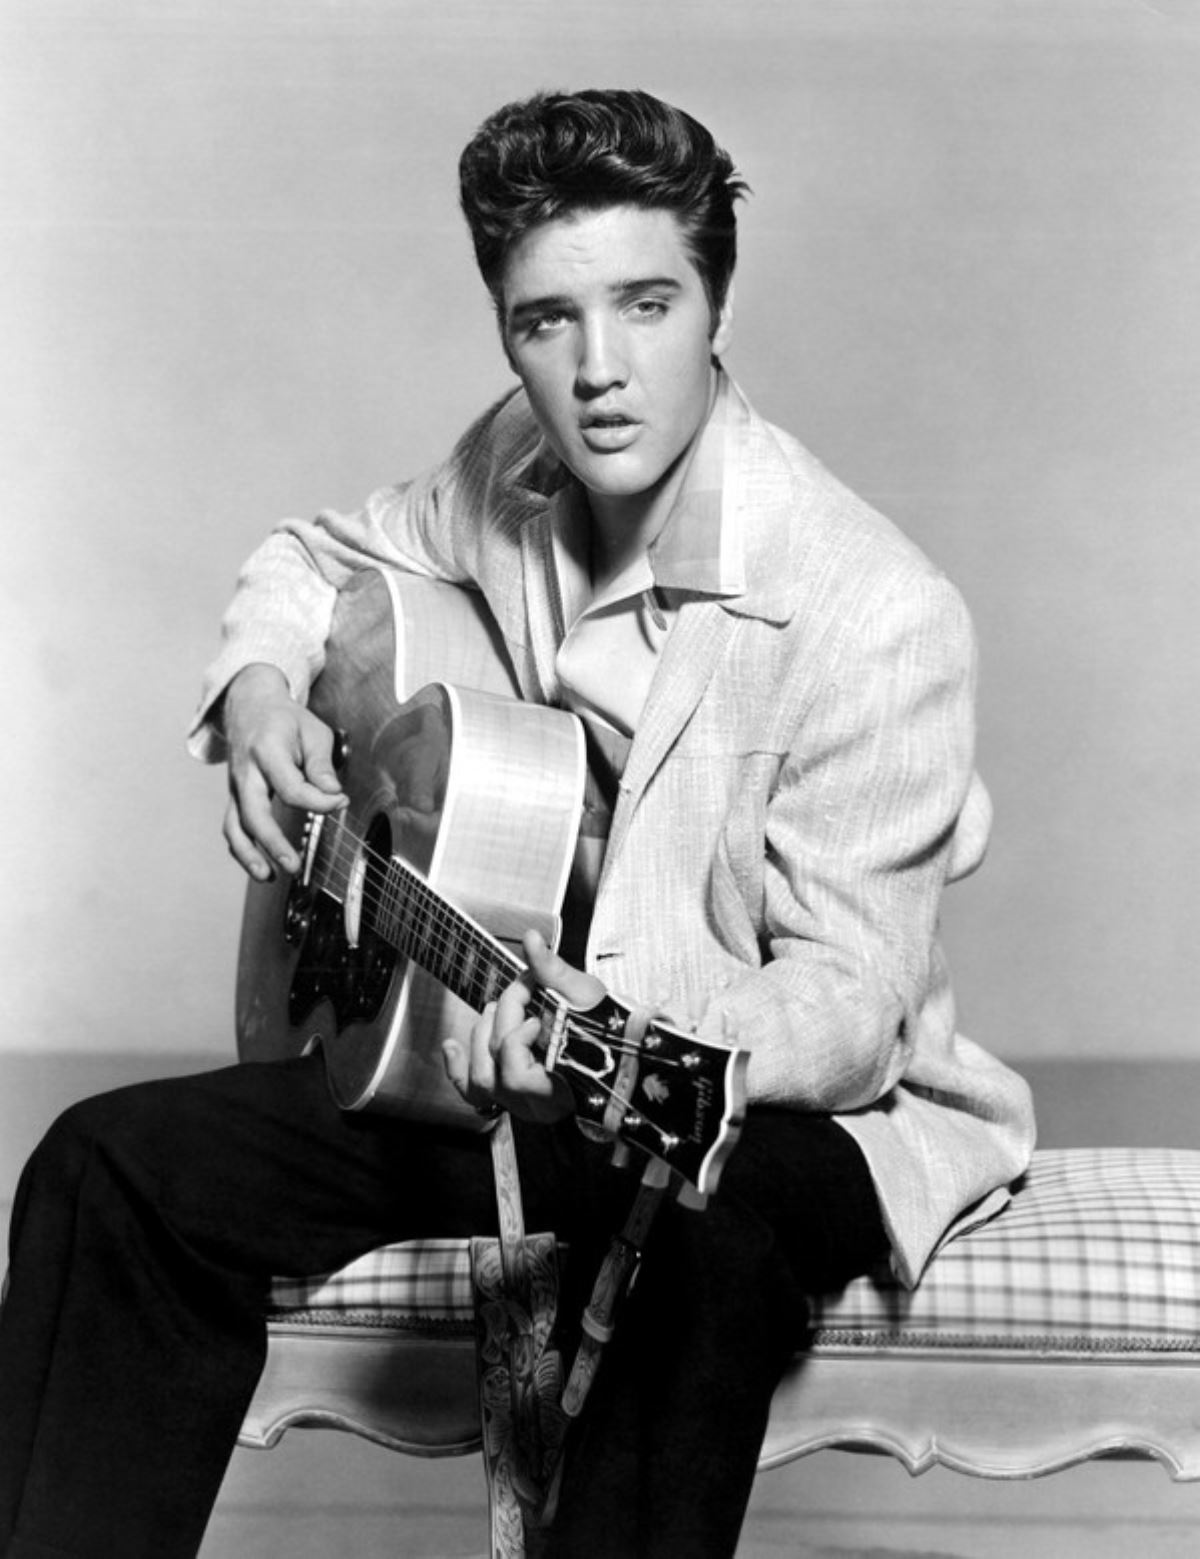 <p><strong>5. Gitar çalmayı kendi kendine öğrendi</strong></p>
<p>1945'te 10 yaşındaki Elvis, yerel radyo istasyonunda canlı yayınlanan Tupelo'da bir gençlik yetenek yarışmasına katıldı. Bu Elvis'in halka açık ilk performansıydı. Beşinci oldu. </p>
<p>Aynı yıl, ailesi, Elvis'in istediği ancak çok pahalı olduğu anlaşılan bir bisiklet yerine, doğum gününde ona bir <strong>gitar</strong> hediye etti. Elvis kısa sürede kendi kendine gitar çalmayı öğrendi ve bir genç olarak kısa süre sonra okul konserlerinde sahneye çıkmaya ve yerel yetenek yarışmalarına katılmaya başladı.</p>
<p>Bu süre zarfında, ikonik imajının anahtarı olacak bir şekilde sanatçı olarak stilini geliştirmeye başladı: <strong>Küba yakalı gömlekler, pileli pantolonlar ve kuruş mokasenleri</strong> temel giysileri haline geldi. O zamana göre alışılmadık bir şekilde saçlarını da uzun tutmaya başladı. Jöleyle saçlarını geriye yatırdı.</p>